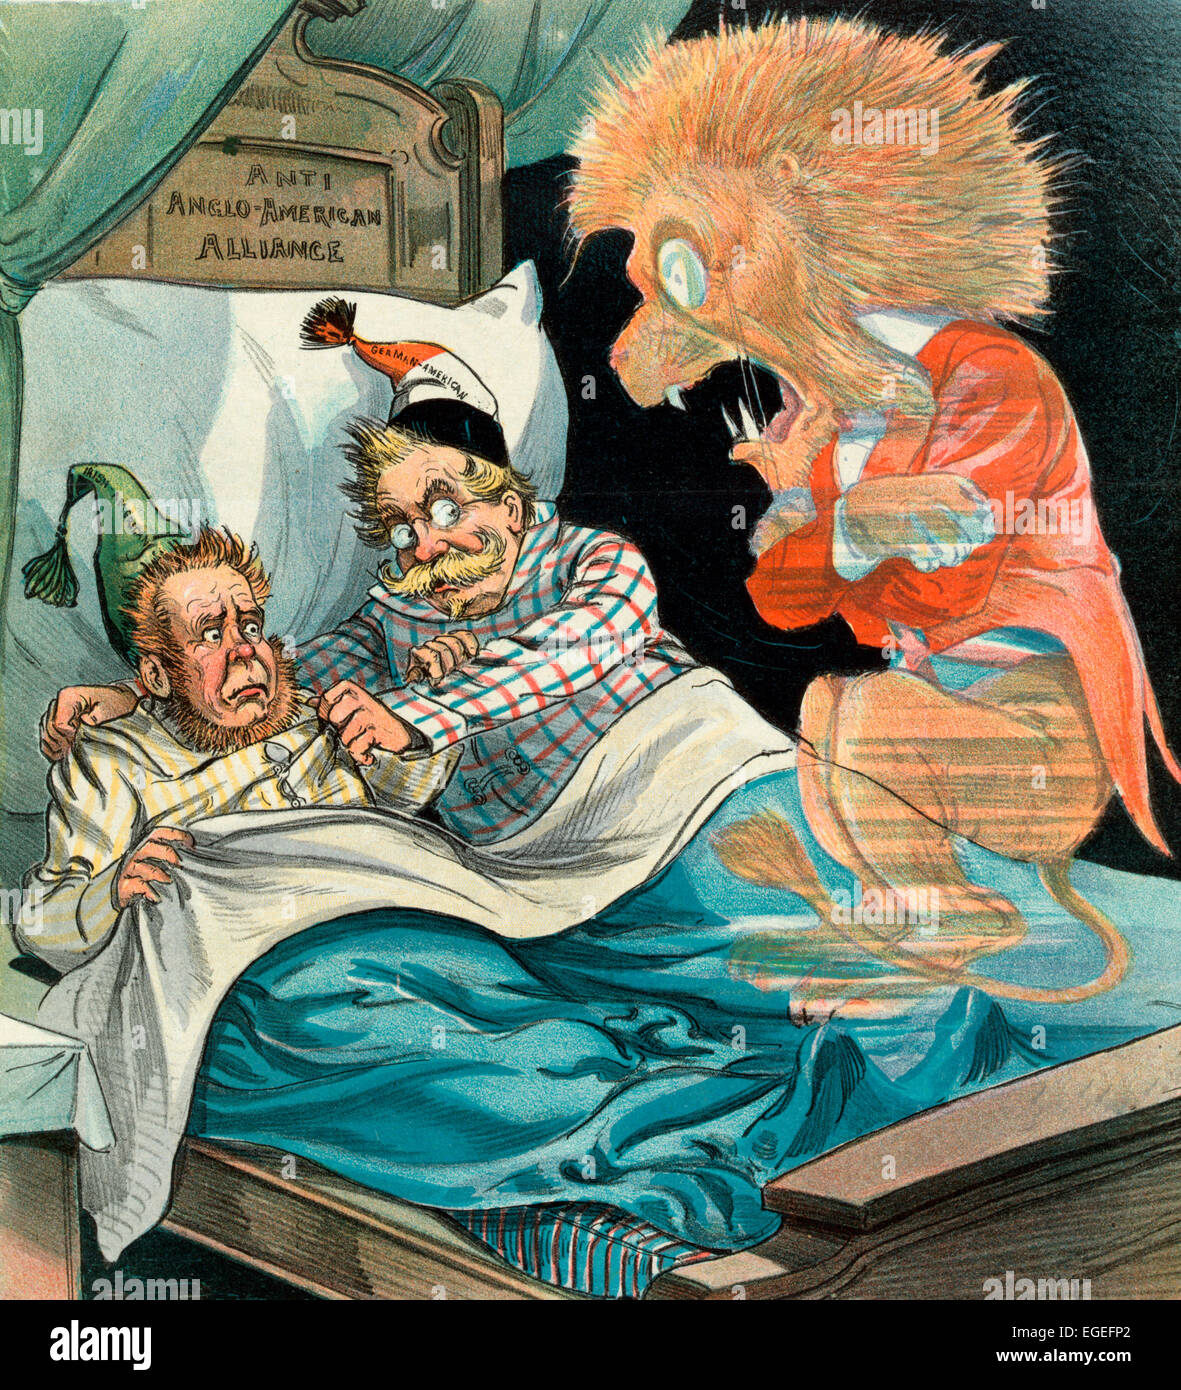 Politik macht seltsamen Bettgenossen - den Geist der britischen Lion reagieren mit Angst auf der Suche nach einer "irischer Amerikaner" und eine "German American" in einem Bett mit der Bezeichnung "Anti anglo-amerikanische Allianz". Politische Karikatur, 1899 Stockfoto